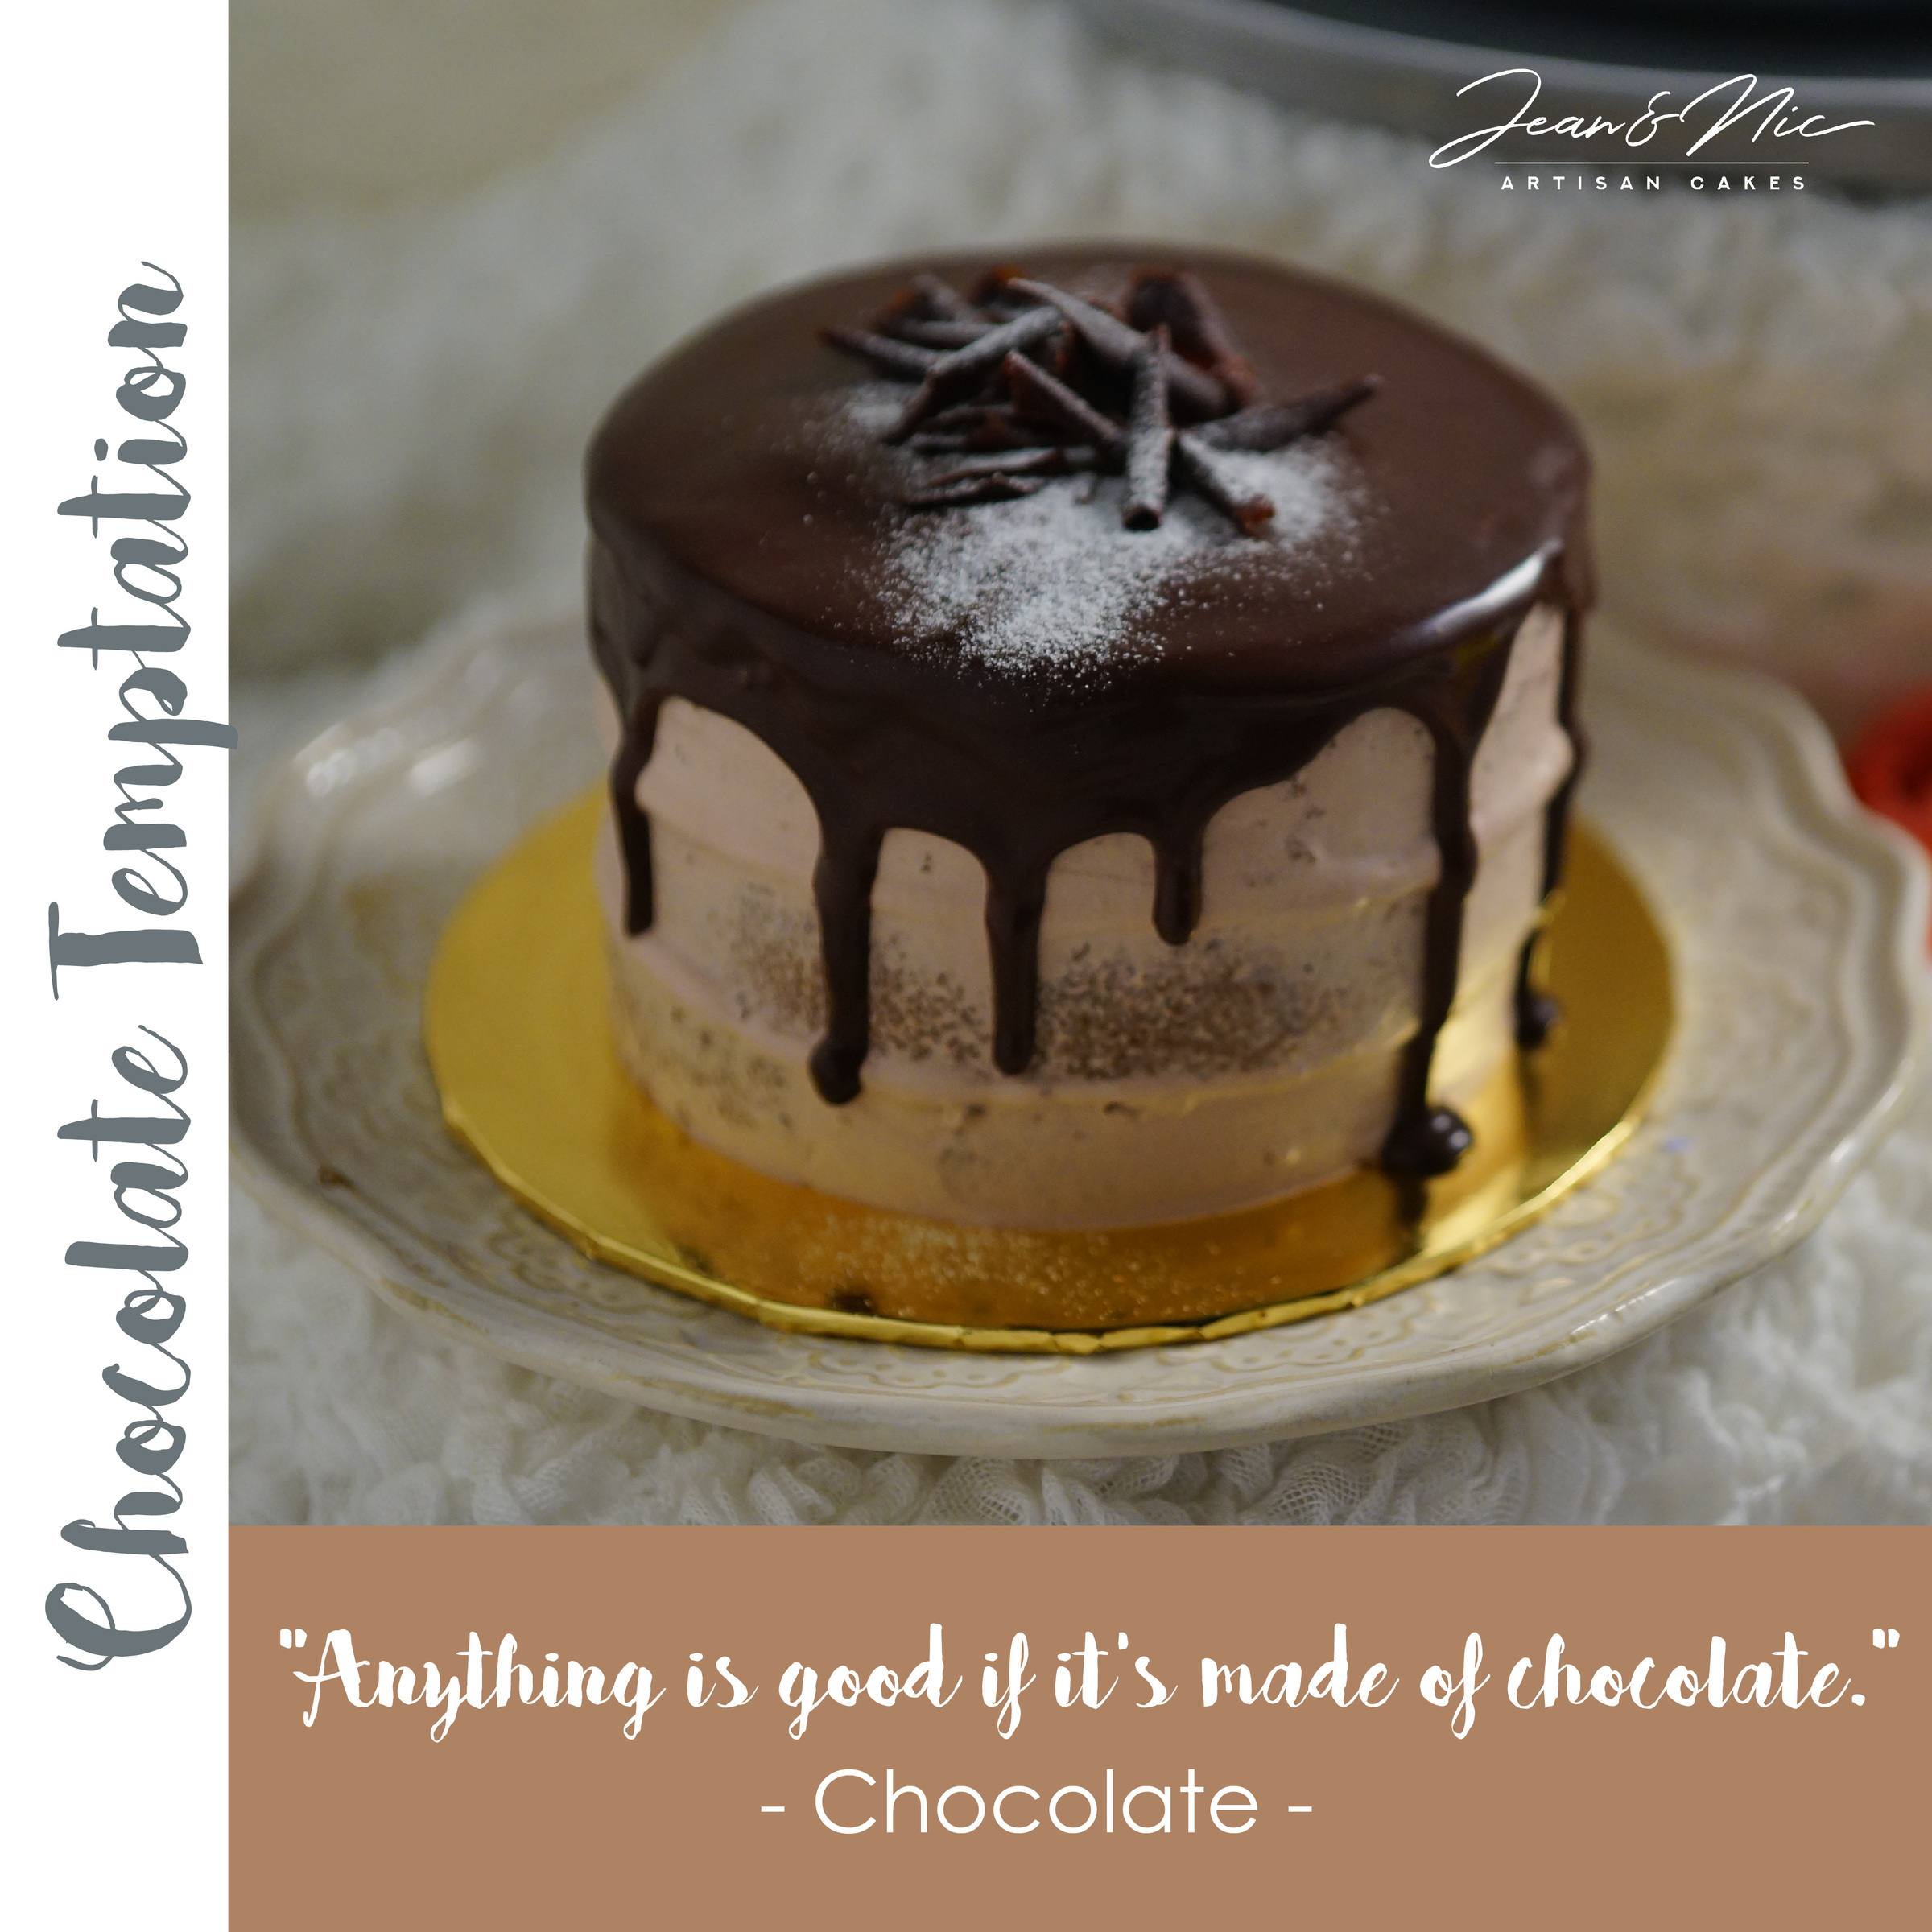 Birthday Wishes | Elegant Temptations Bakery